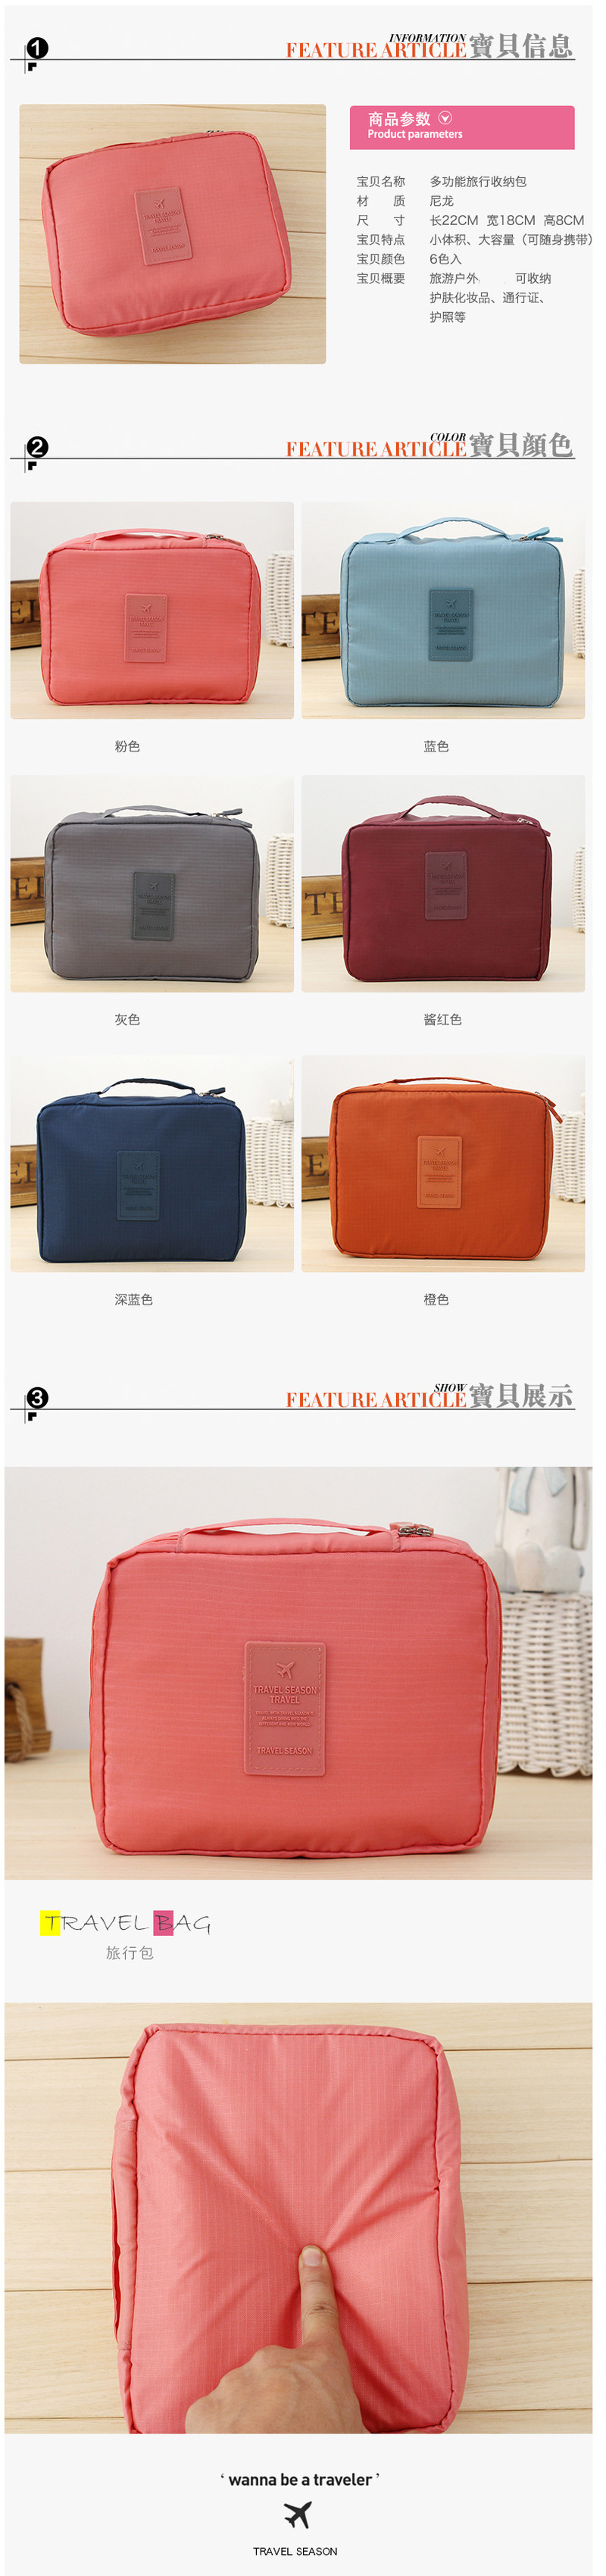 韩版方形旅行多功能内衣收纳包 旅行包 便携洗漱多色随机